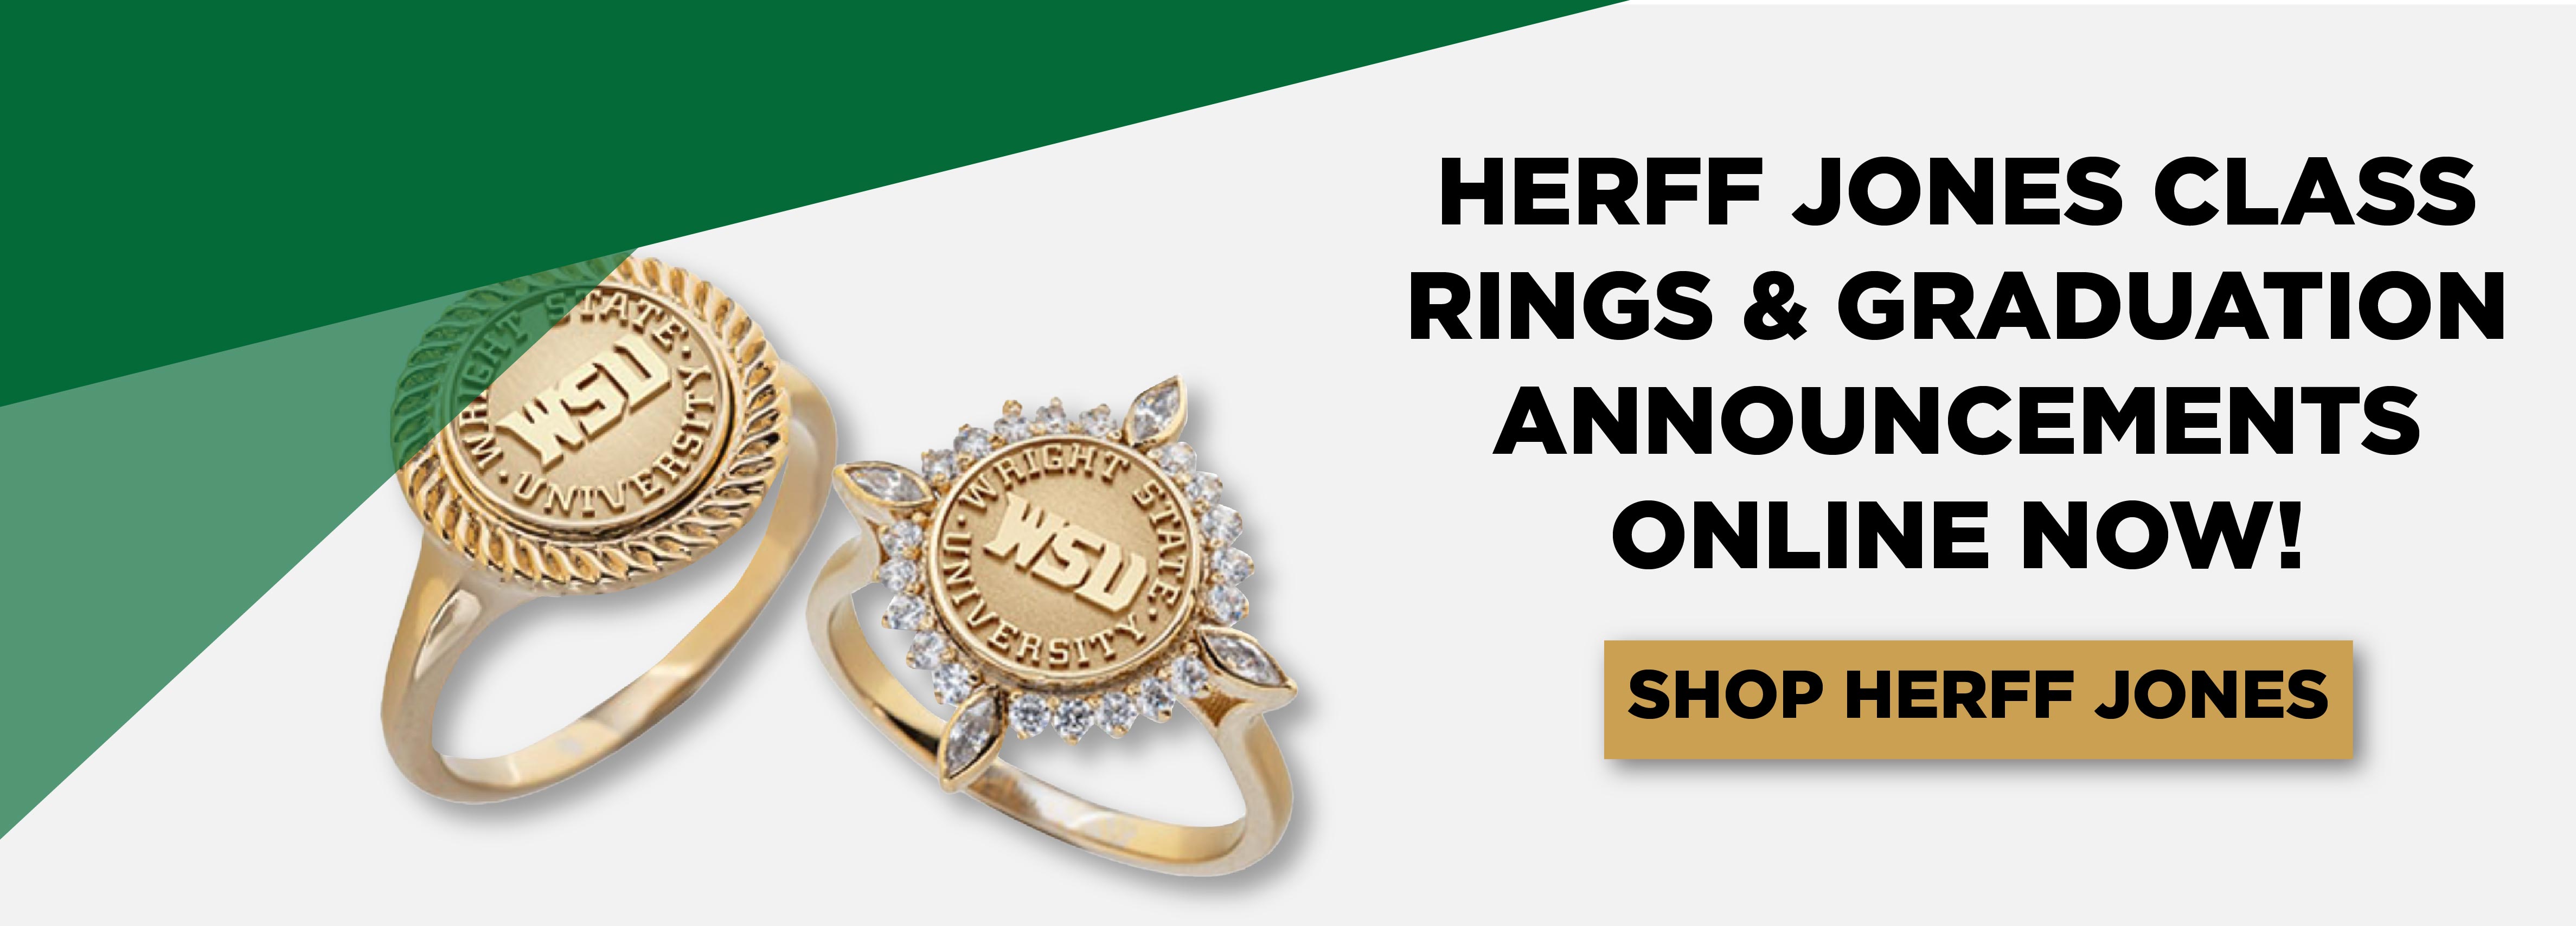 Herff Jones Class Rings & Graduation Announcements Online Now! Shop Herff Jones